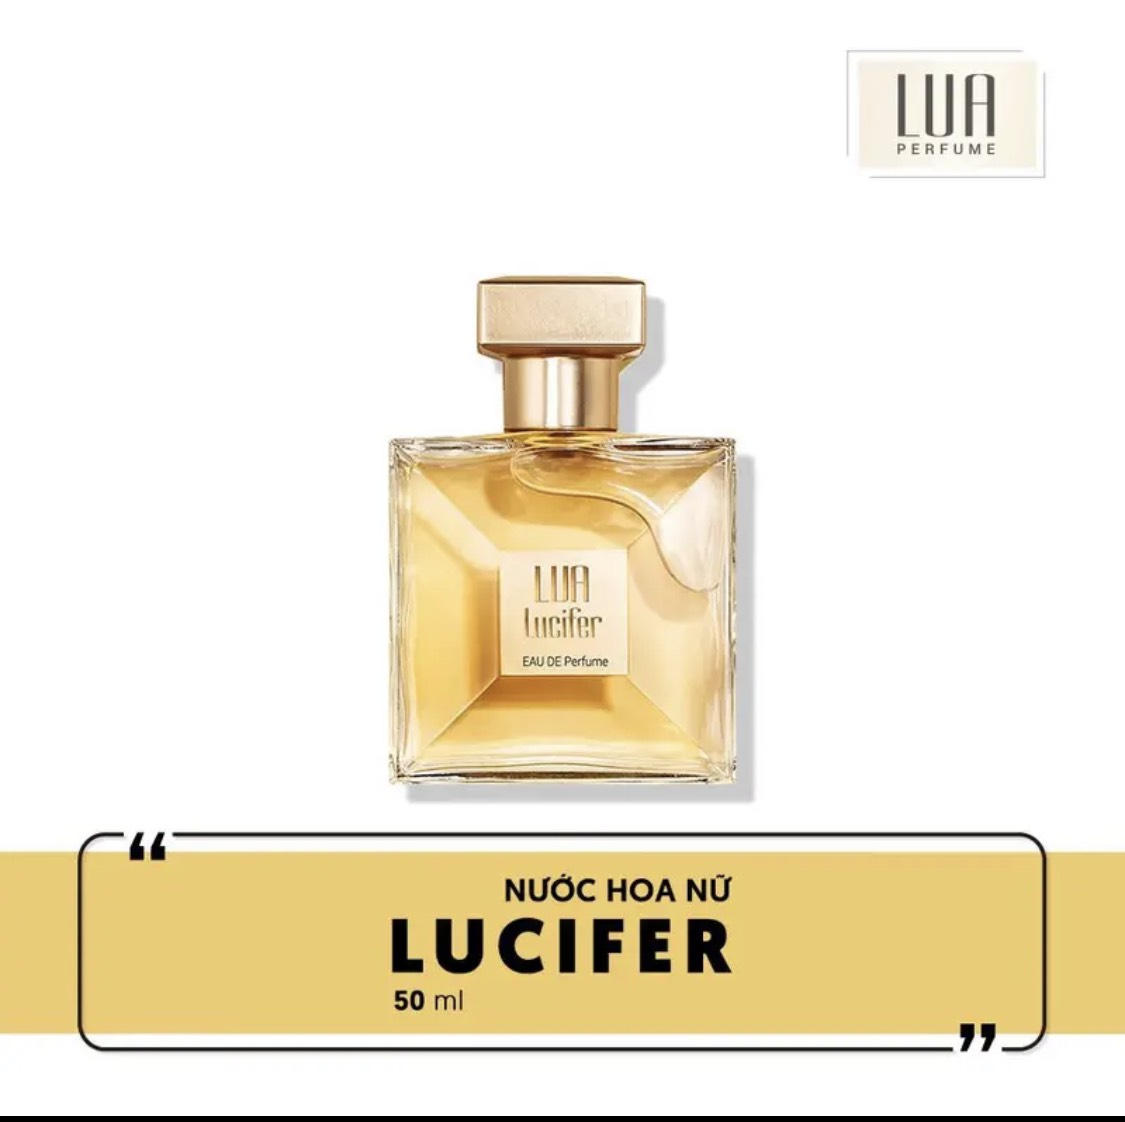 Nước Hoa Nữ Xạ Hương Thảo Lucifer Lua Perfume - 8936095370730